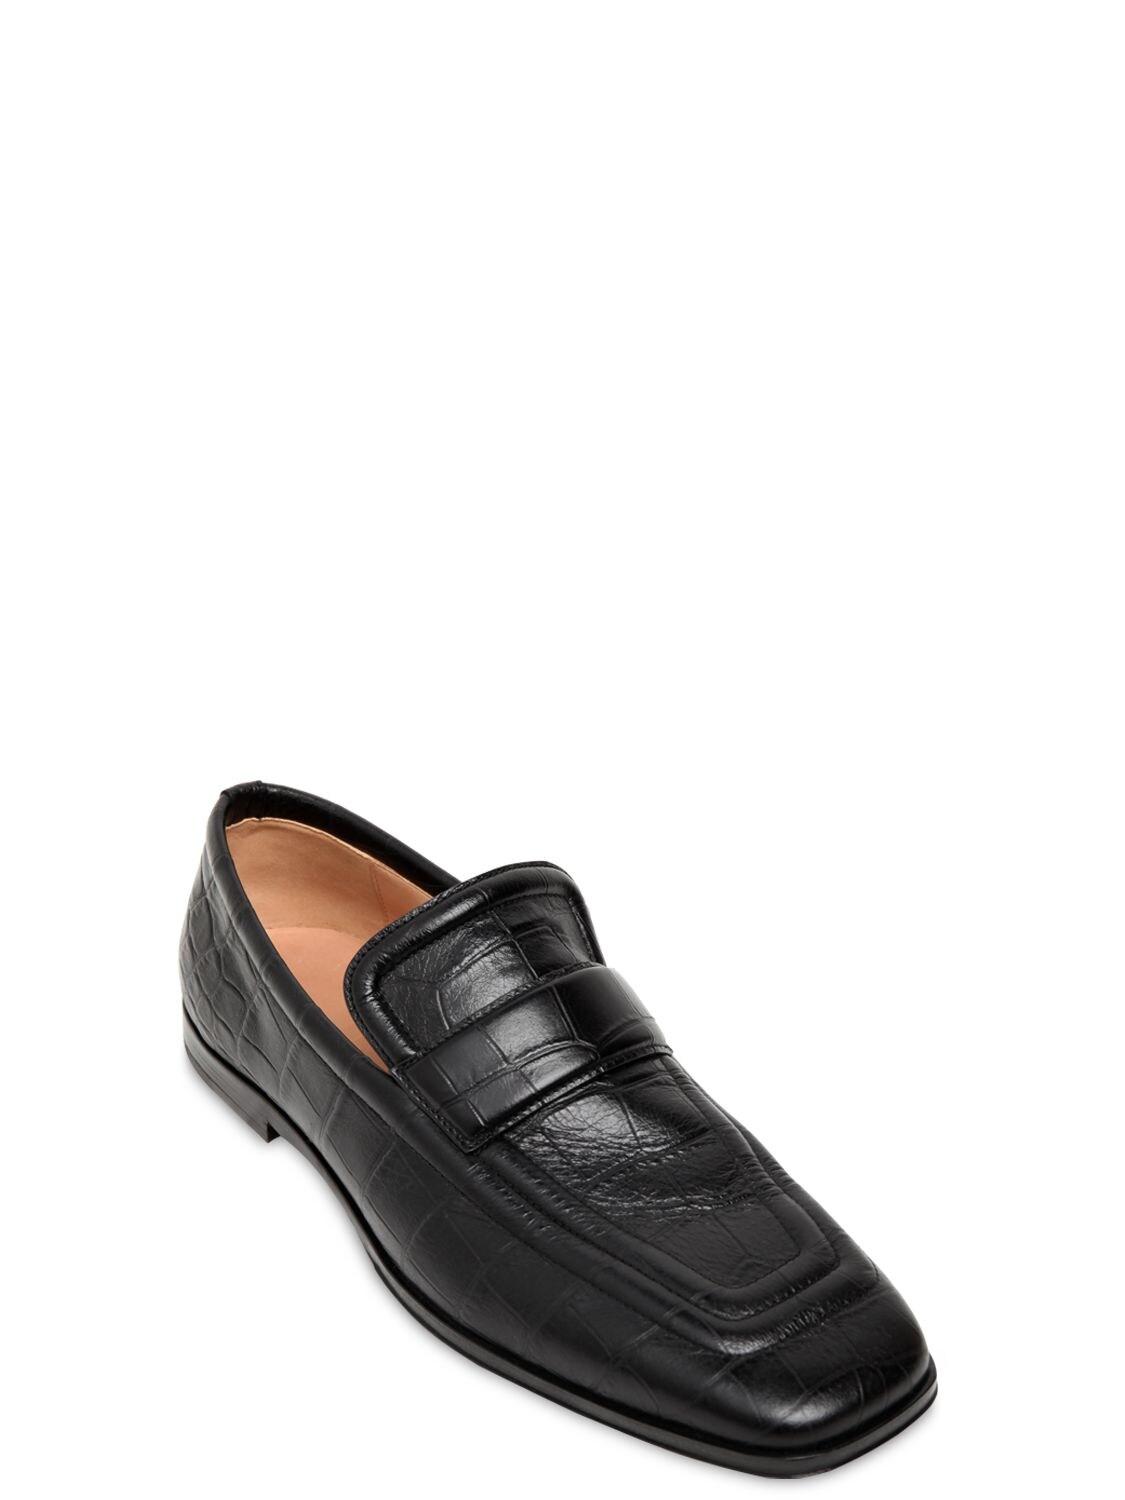 Bottega Veneta Croc Embossed Leather Loafers in Black for Men - Lyst